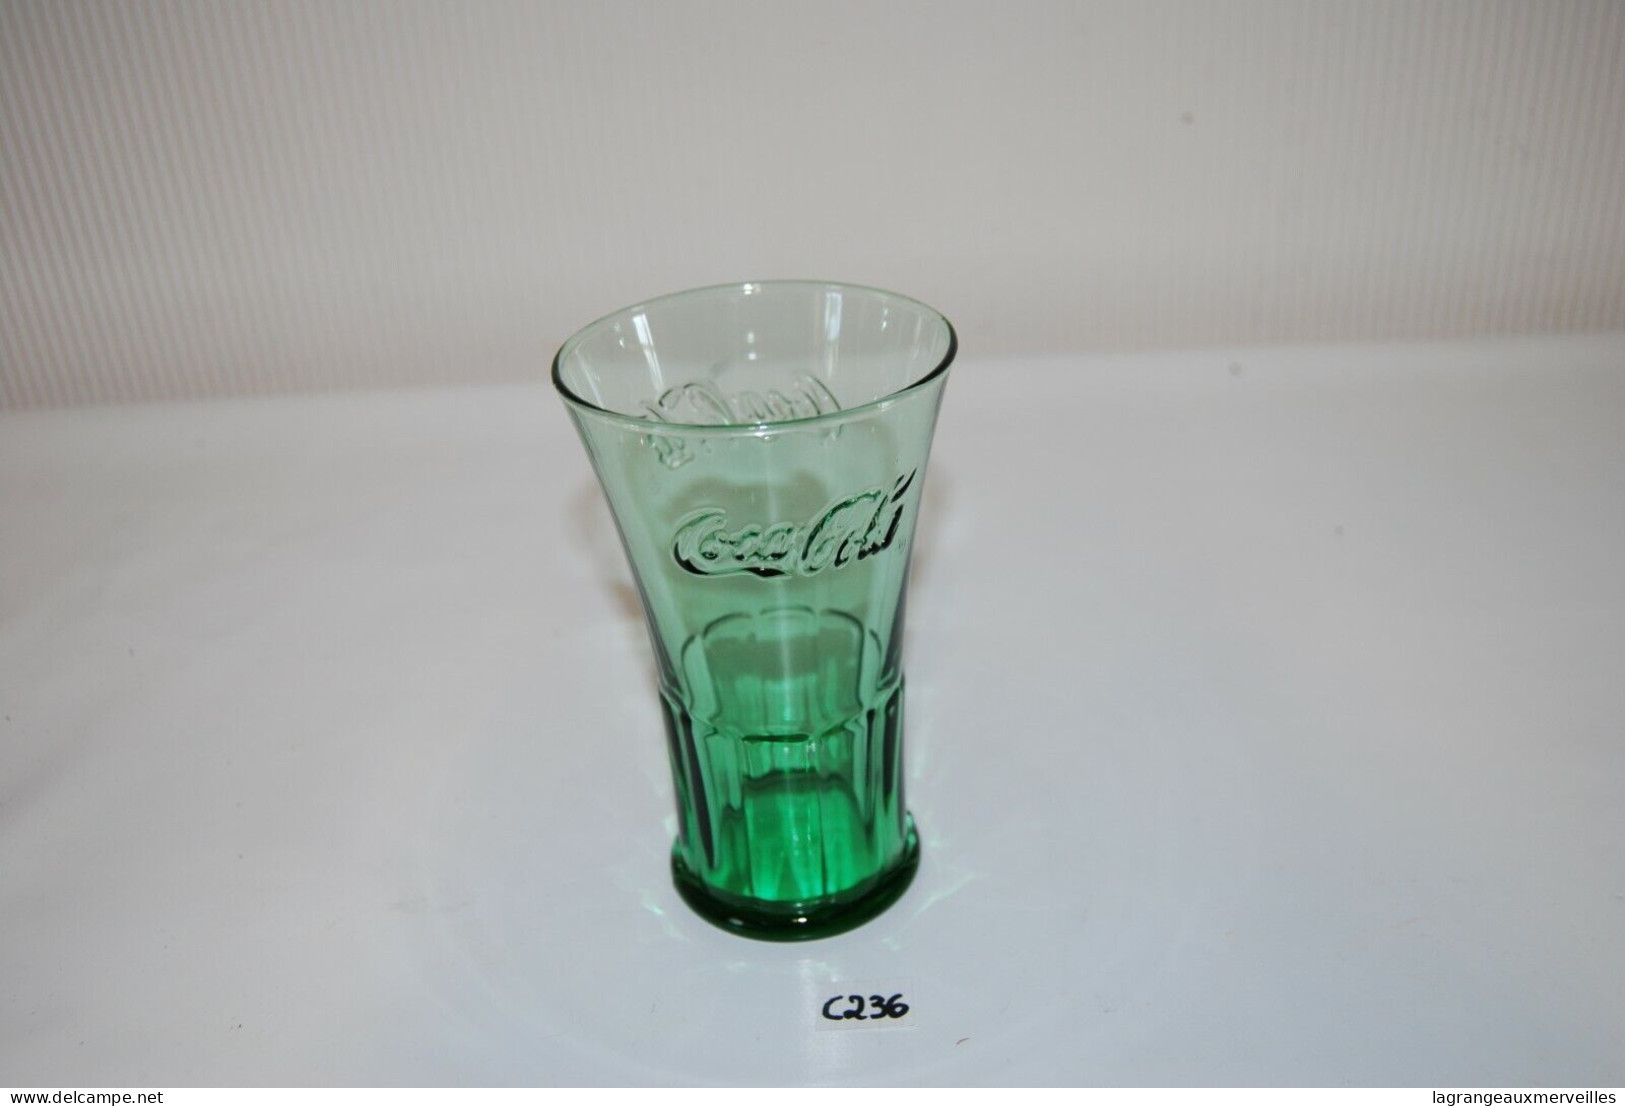 C236 Coca Cola - Ancien Verre De Collection - Glas Collector - Tazze & Bicchieri